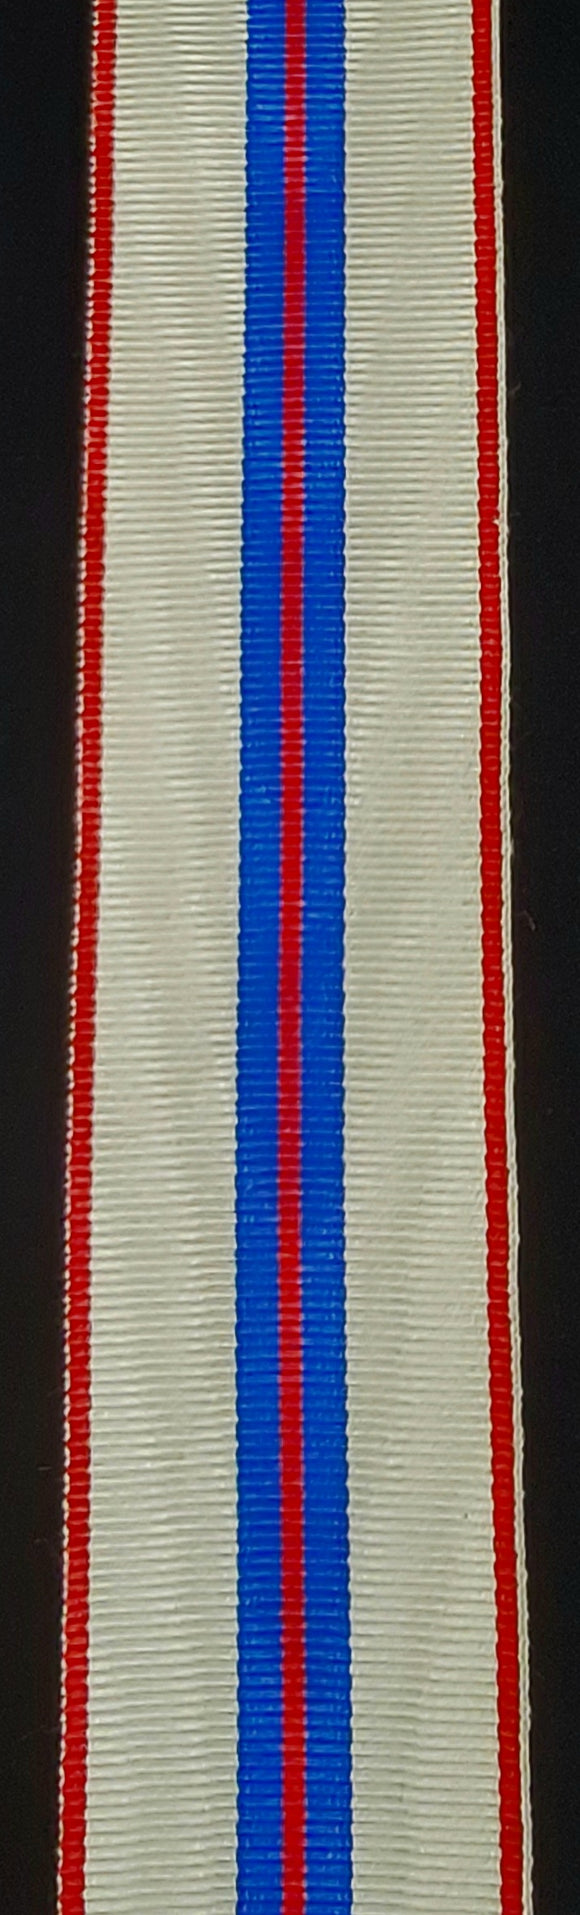 Ribbon, Queen Silver Jubilee Medal 1977